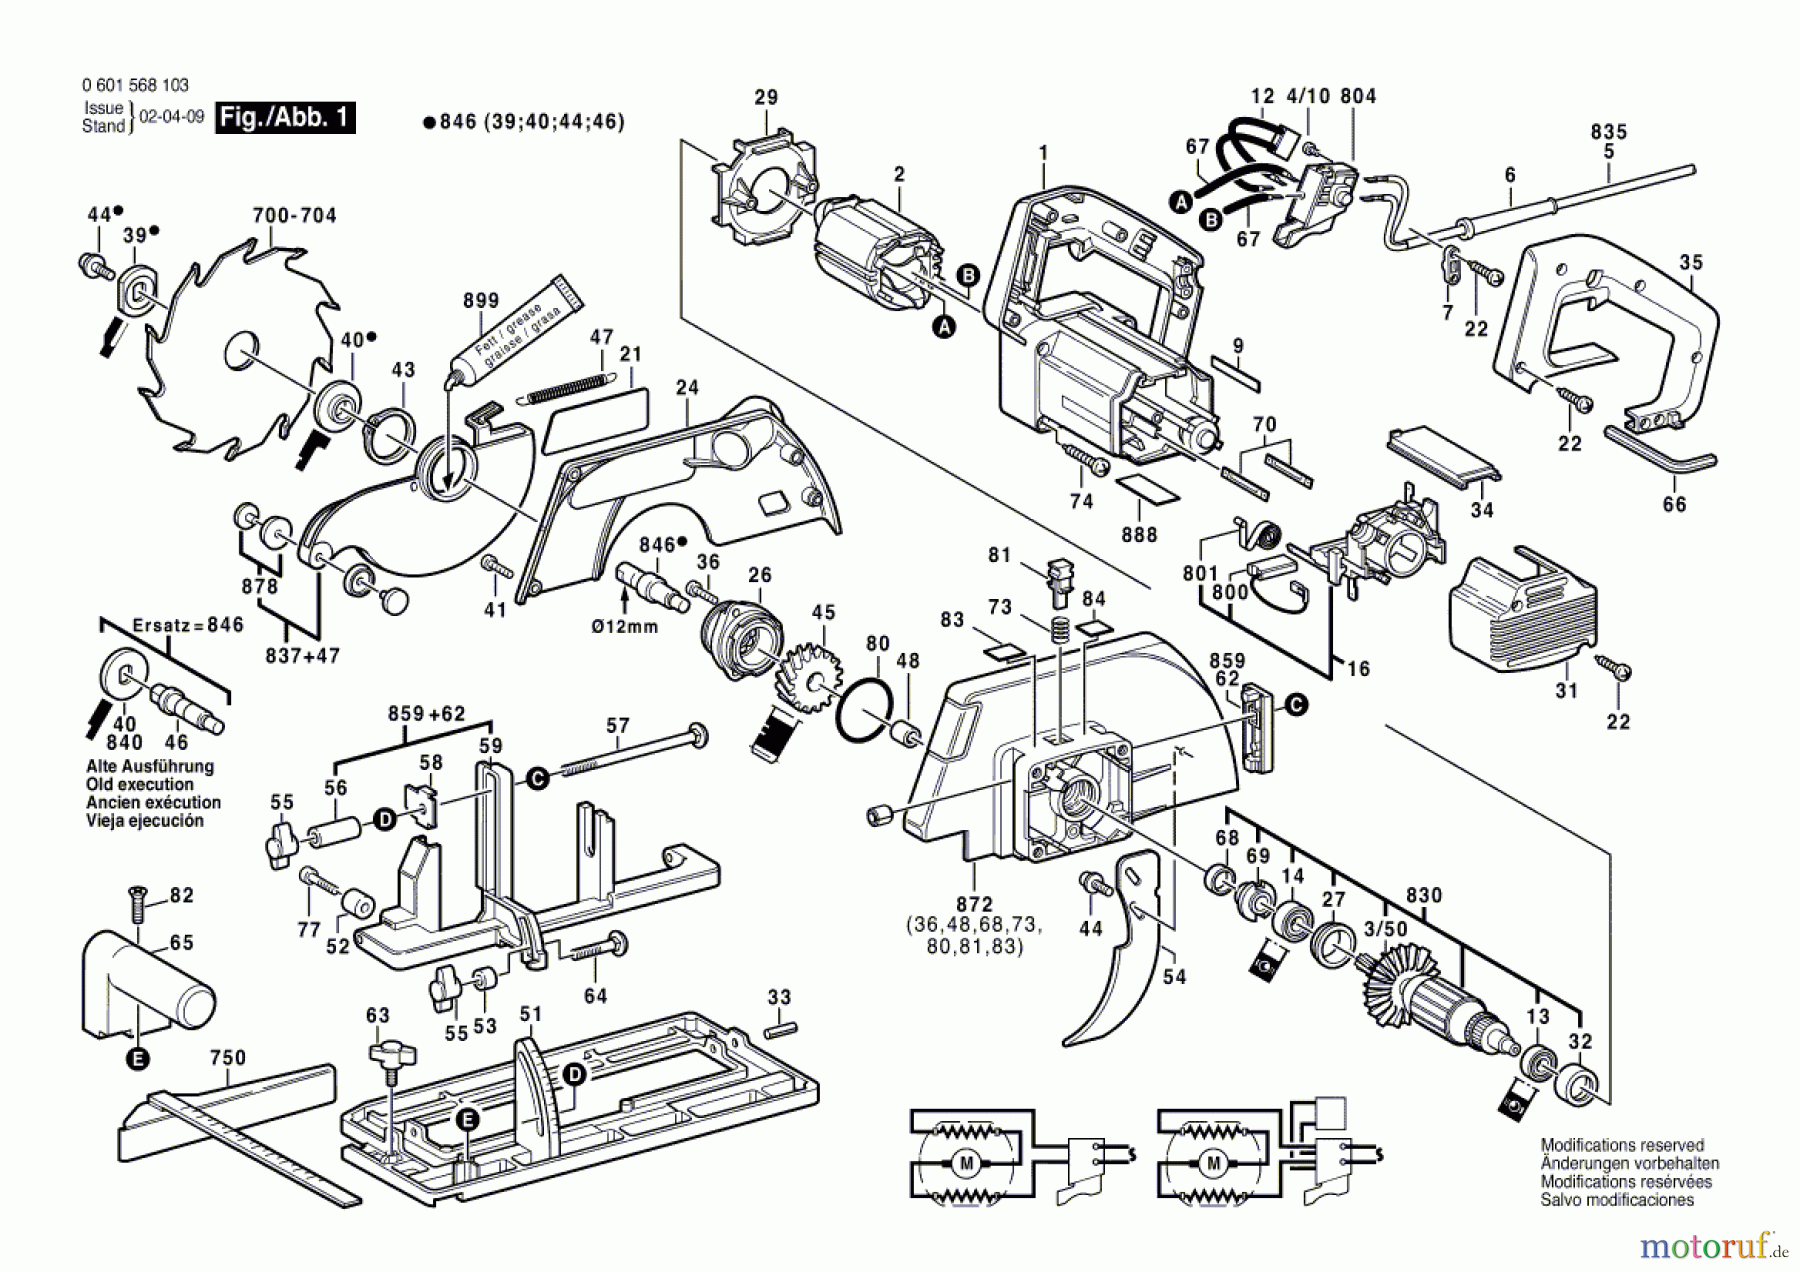  Bosch Werkzeug Handkreissäge GKS 65 Seite 1